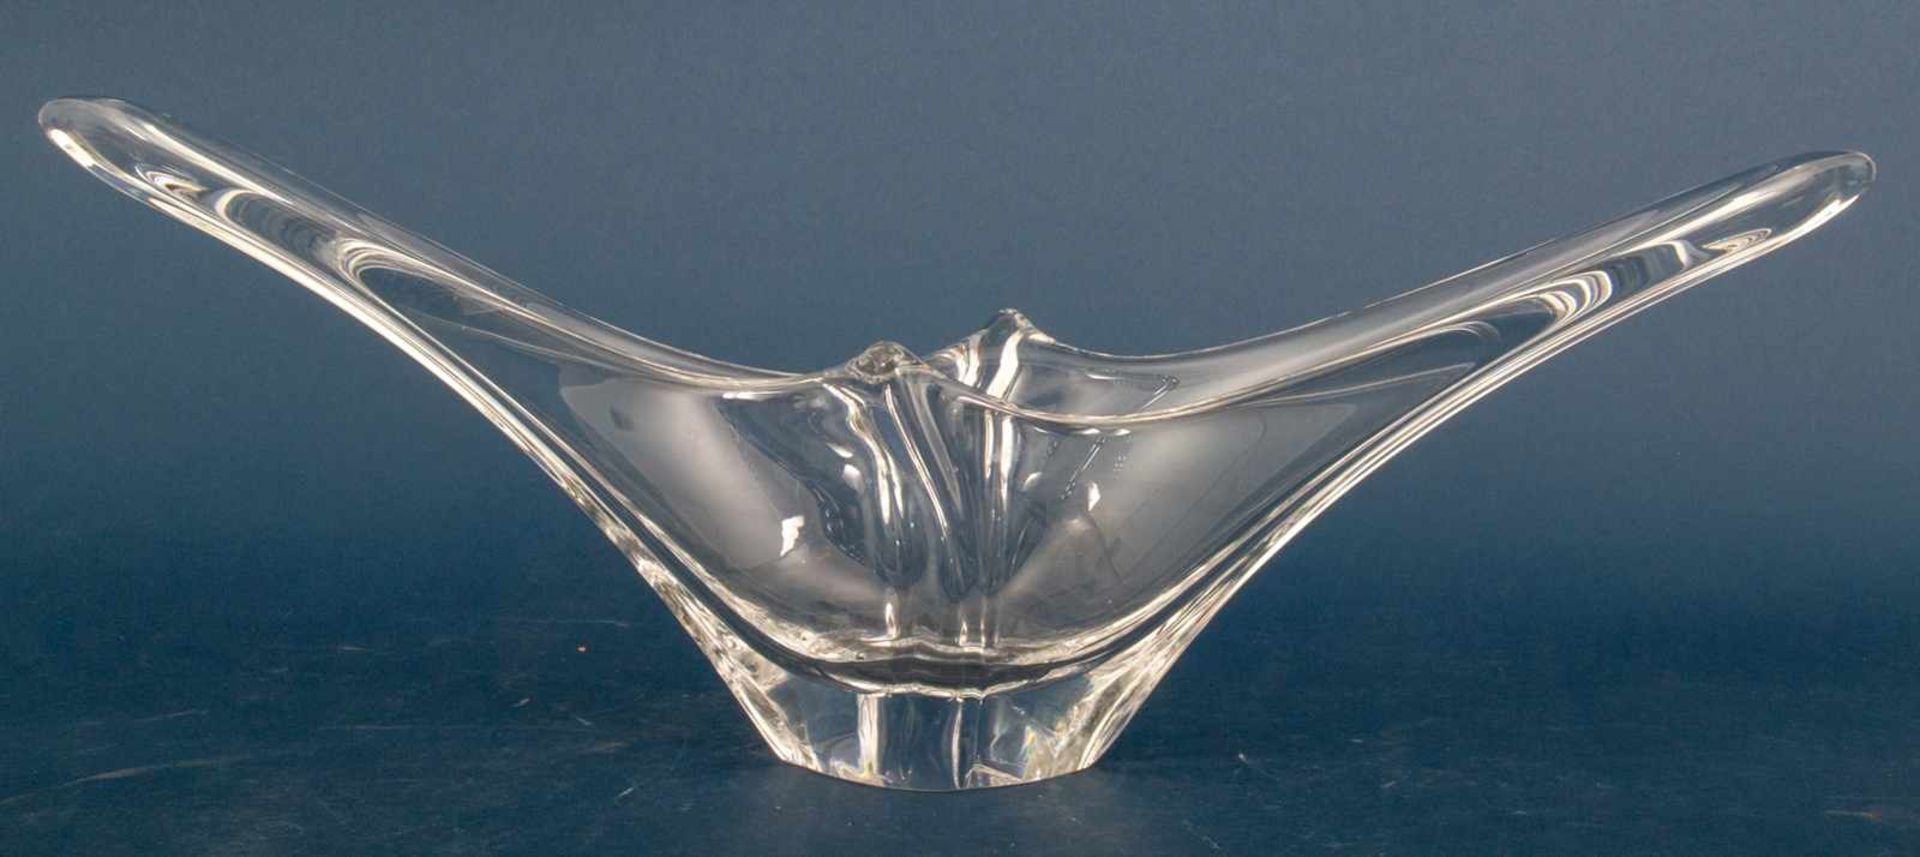 Große Glasschale "DAUM - FRANCE". Farbloses Kristallglas in exentrischer Formgebung. Länge ca. 60